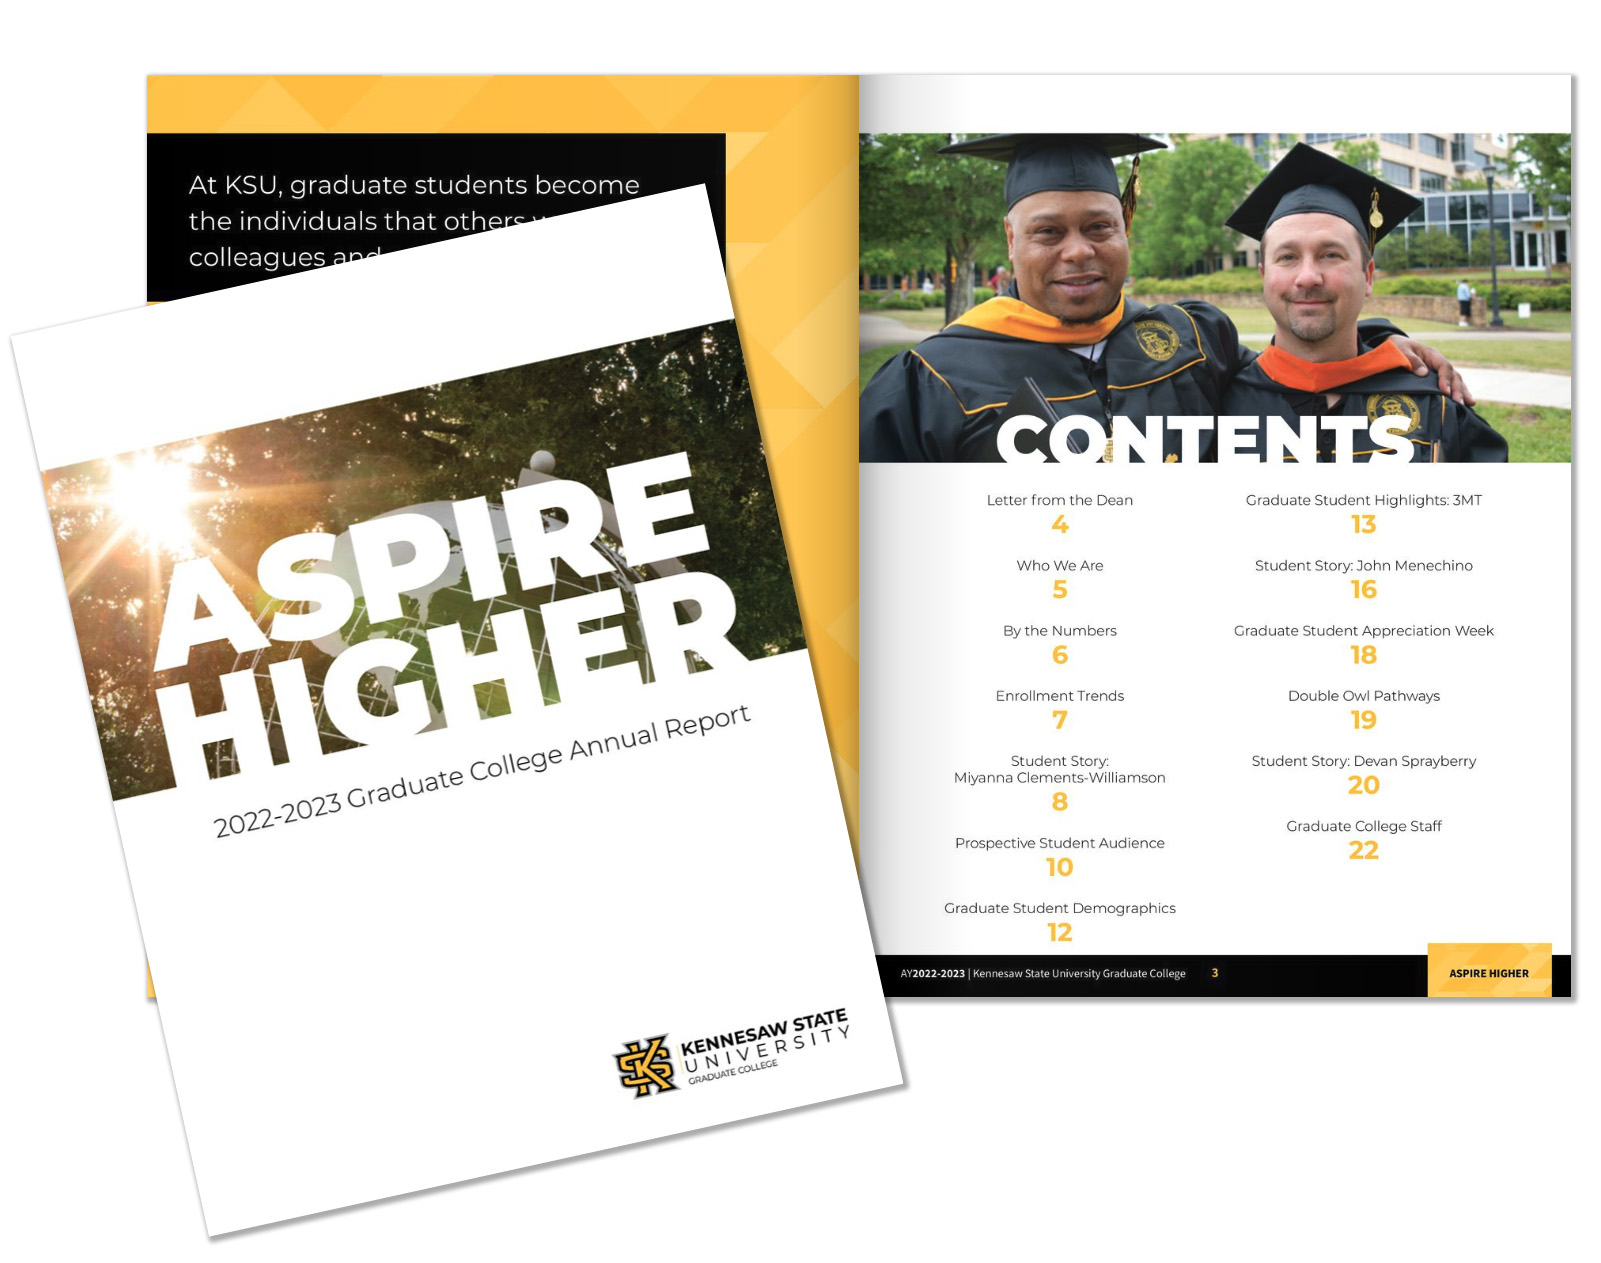 Aspire Higher Graduate College Annual Report